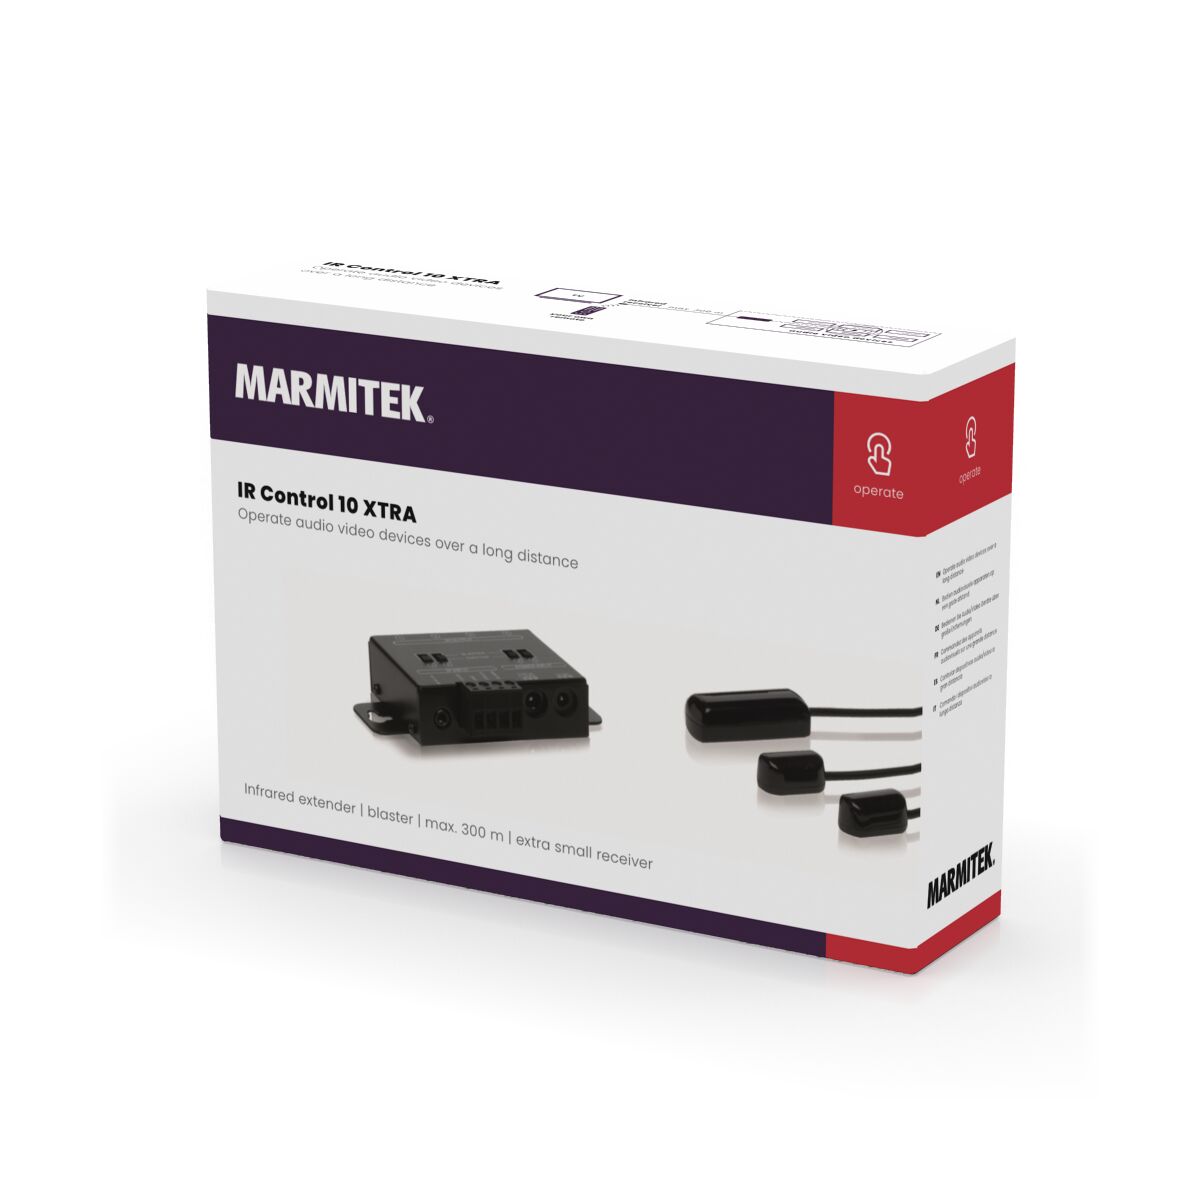 IR Control 10 XTRA - IR extender - 3D Packshot Image | Marmitek